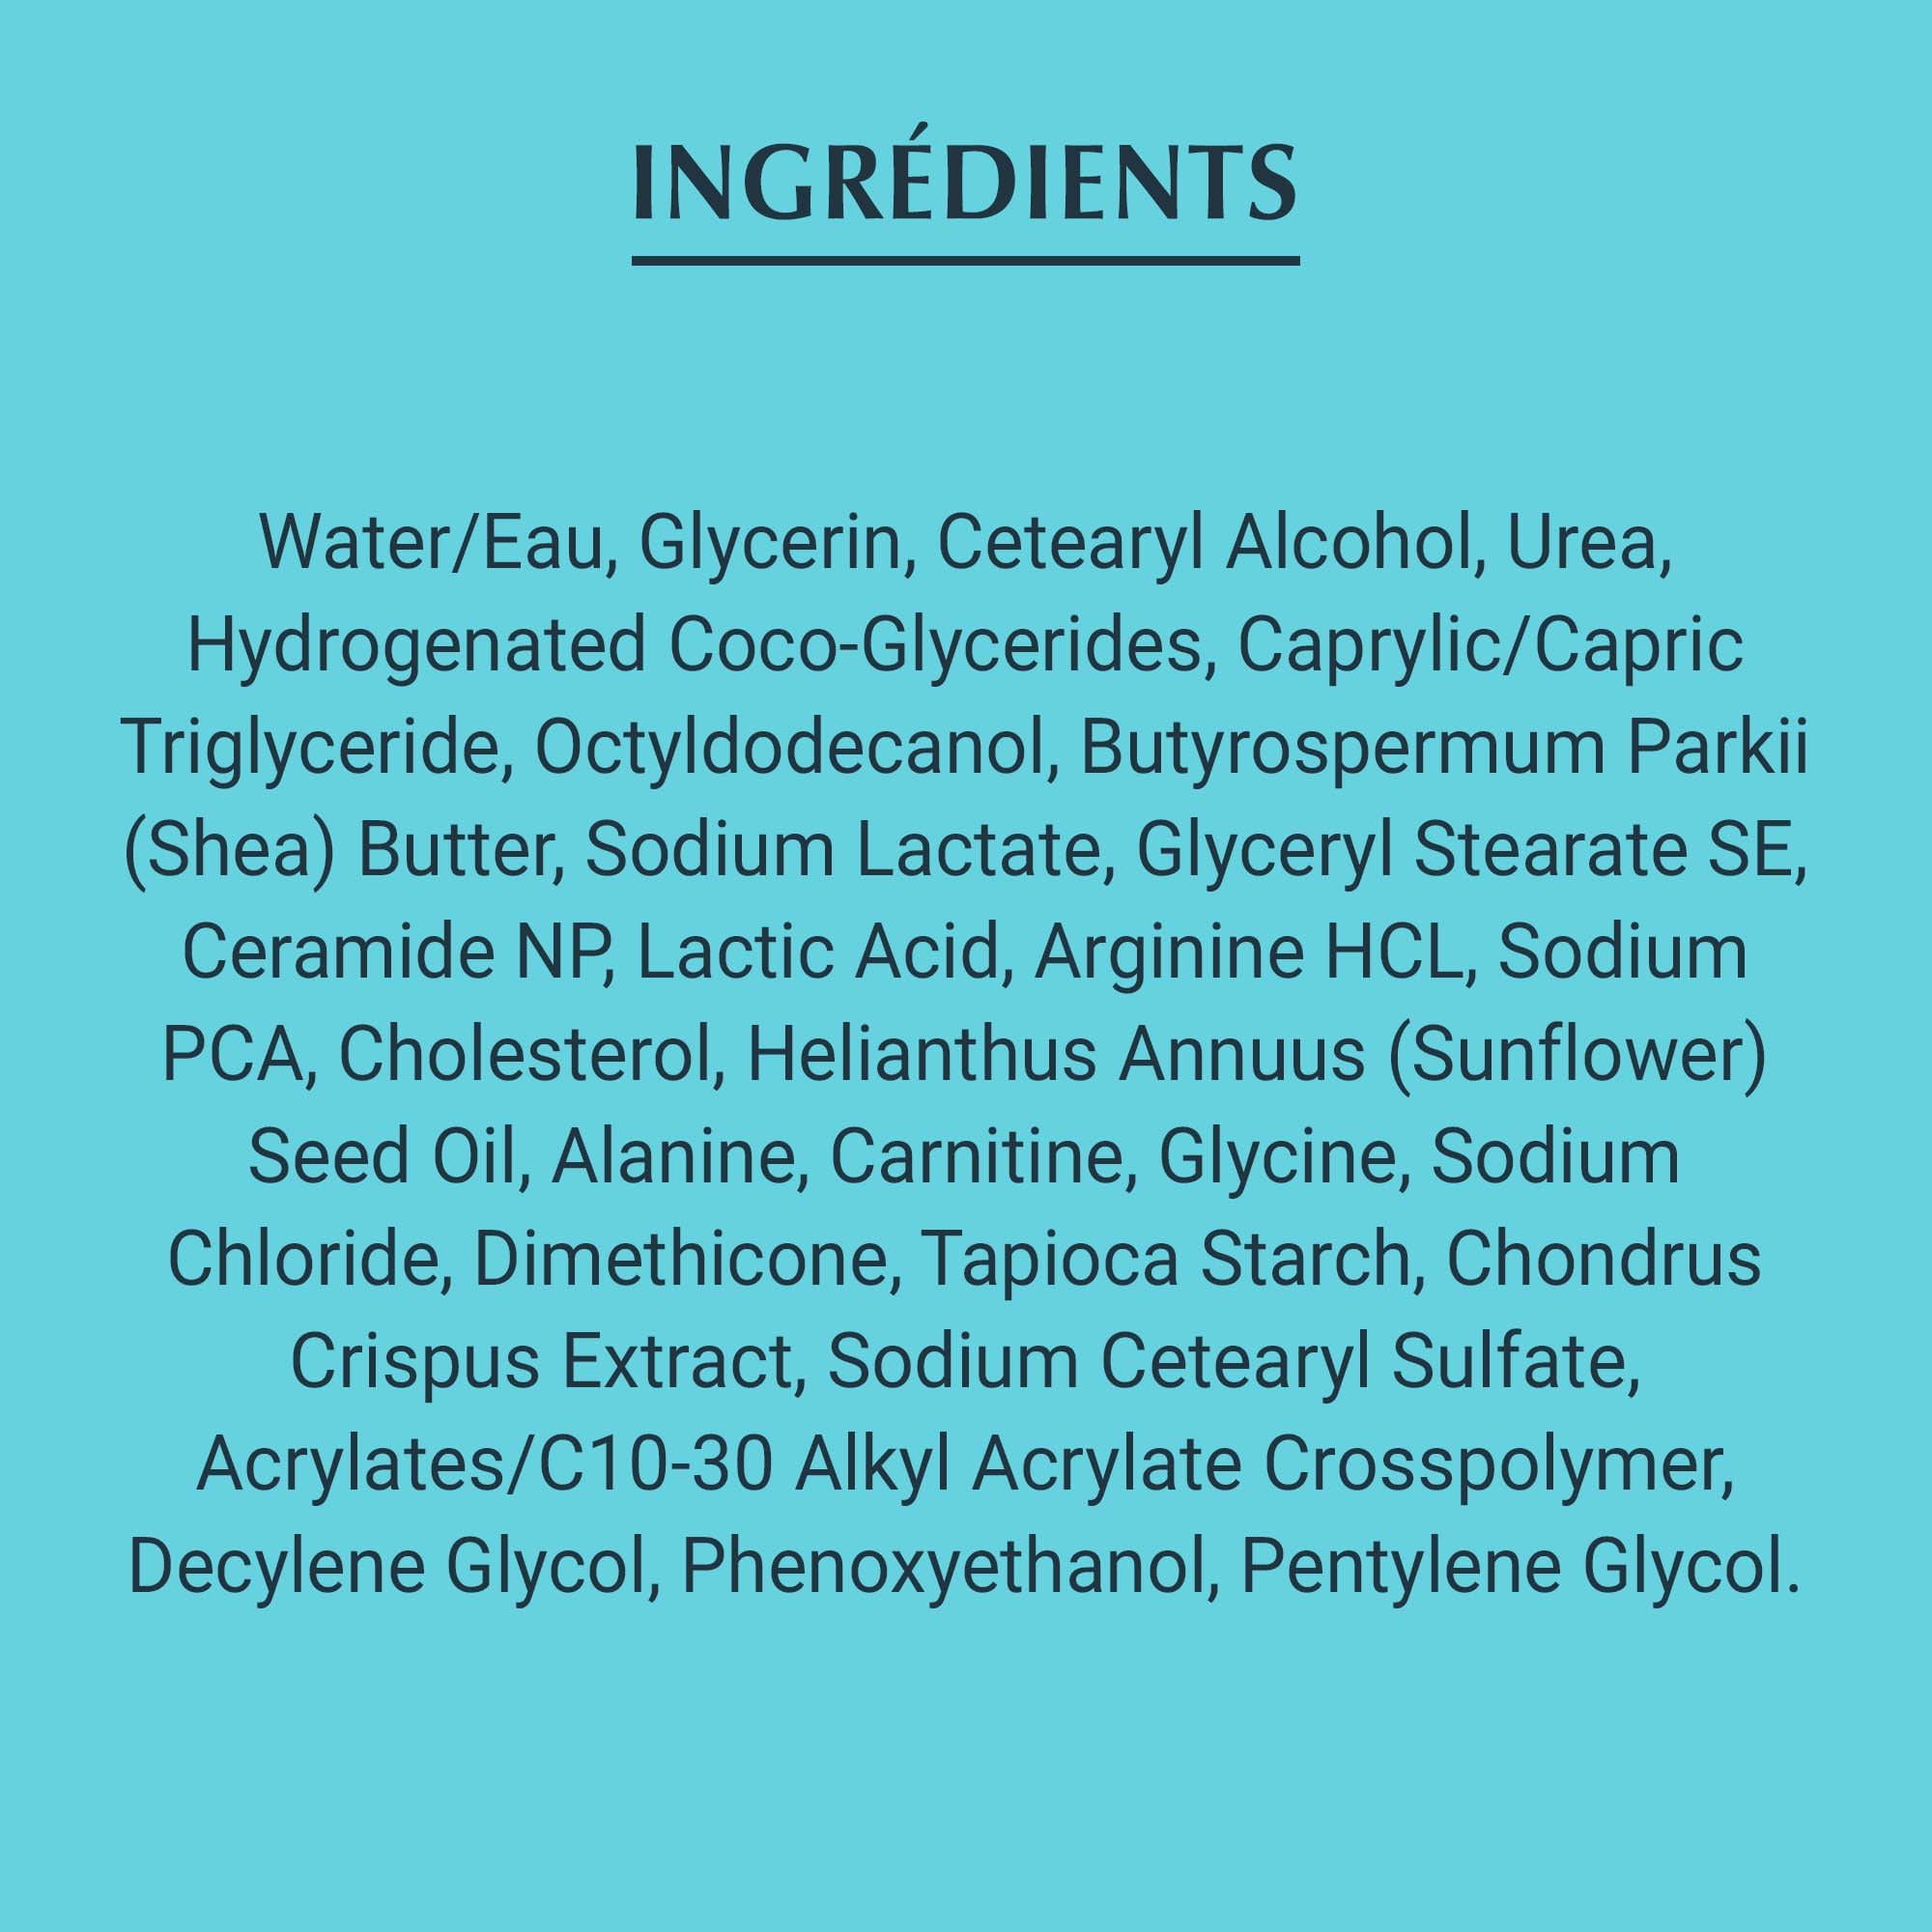 Liste des ingrédients composant la Crème Eucerin Complete Repair, sur fond bleu sarcelle.